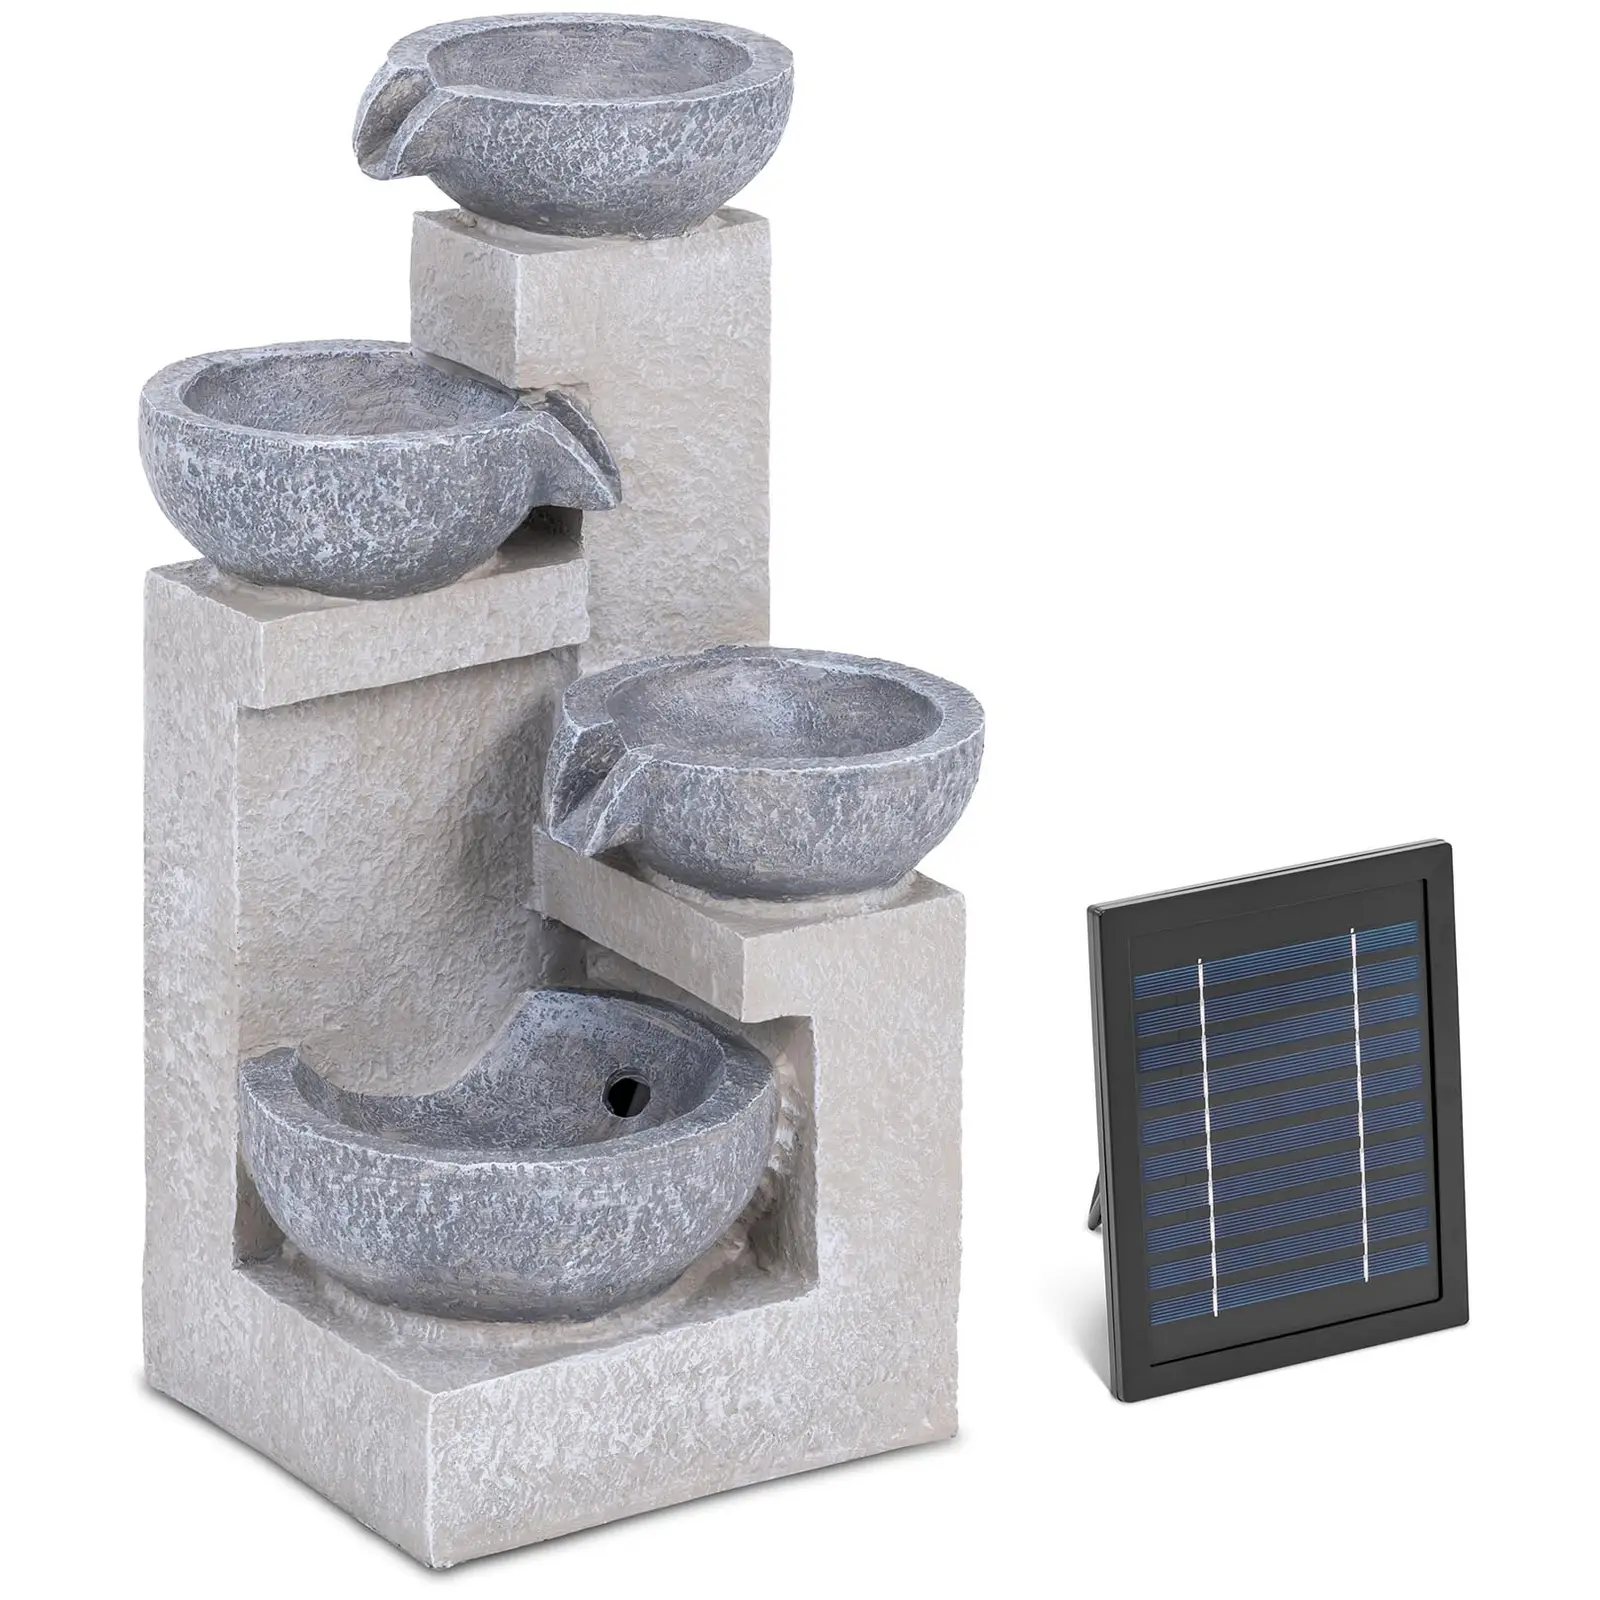 Solární zahradní fontána 4 mísy na cementové stěně LED osvětlení - Zahradní fontány hillvert